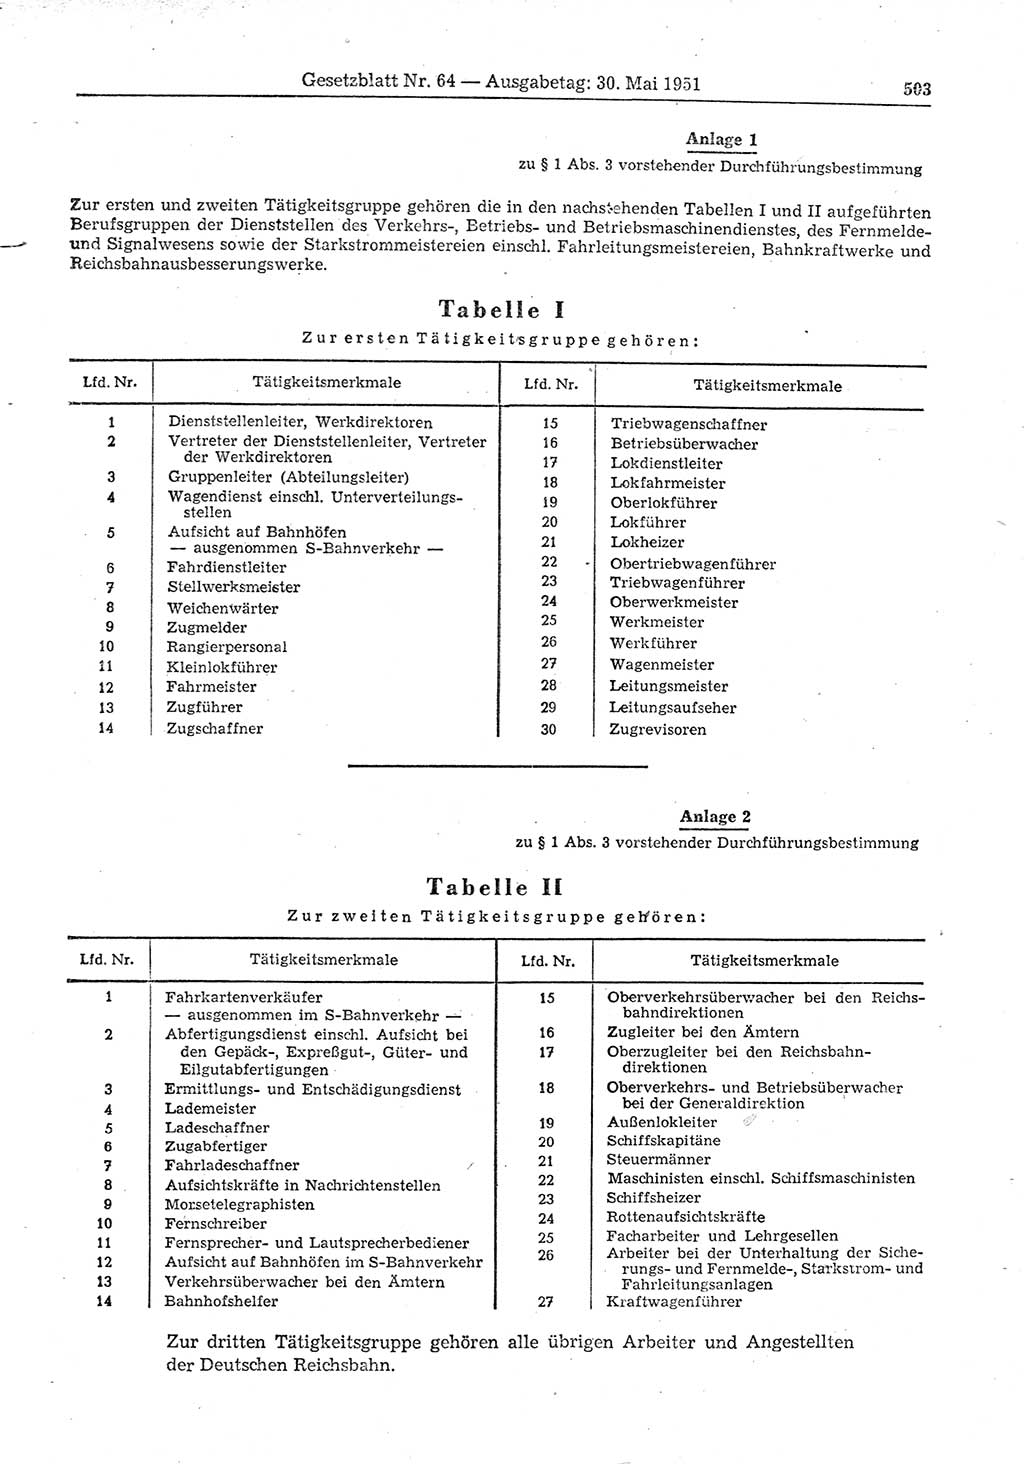 Gesetzblatt (GBl.) der Deutschen Demokratischen Republik (DDR) 1951, Seite 503 (GBl. DDR 1951, S. 503)